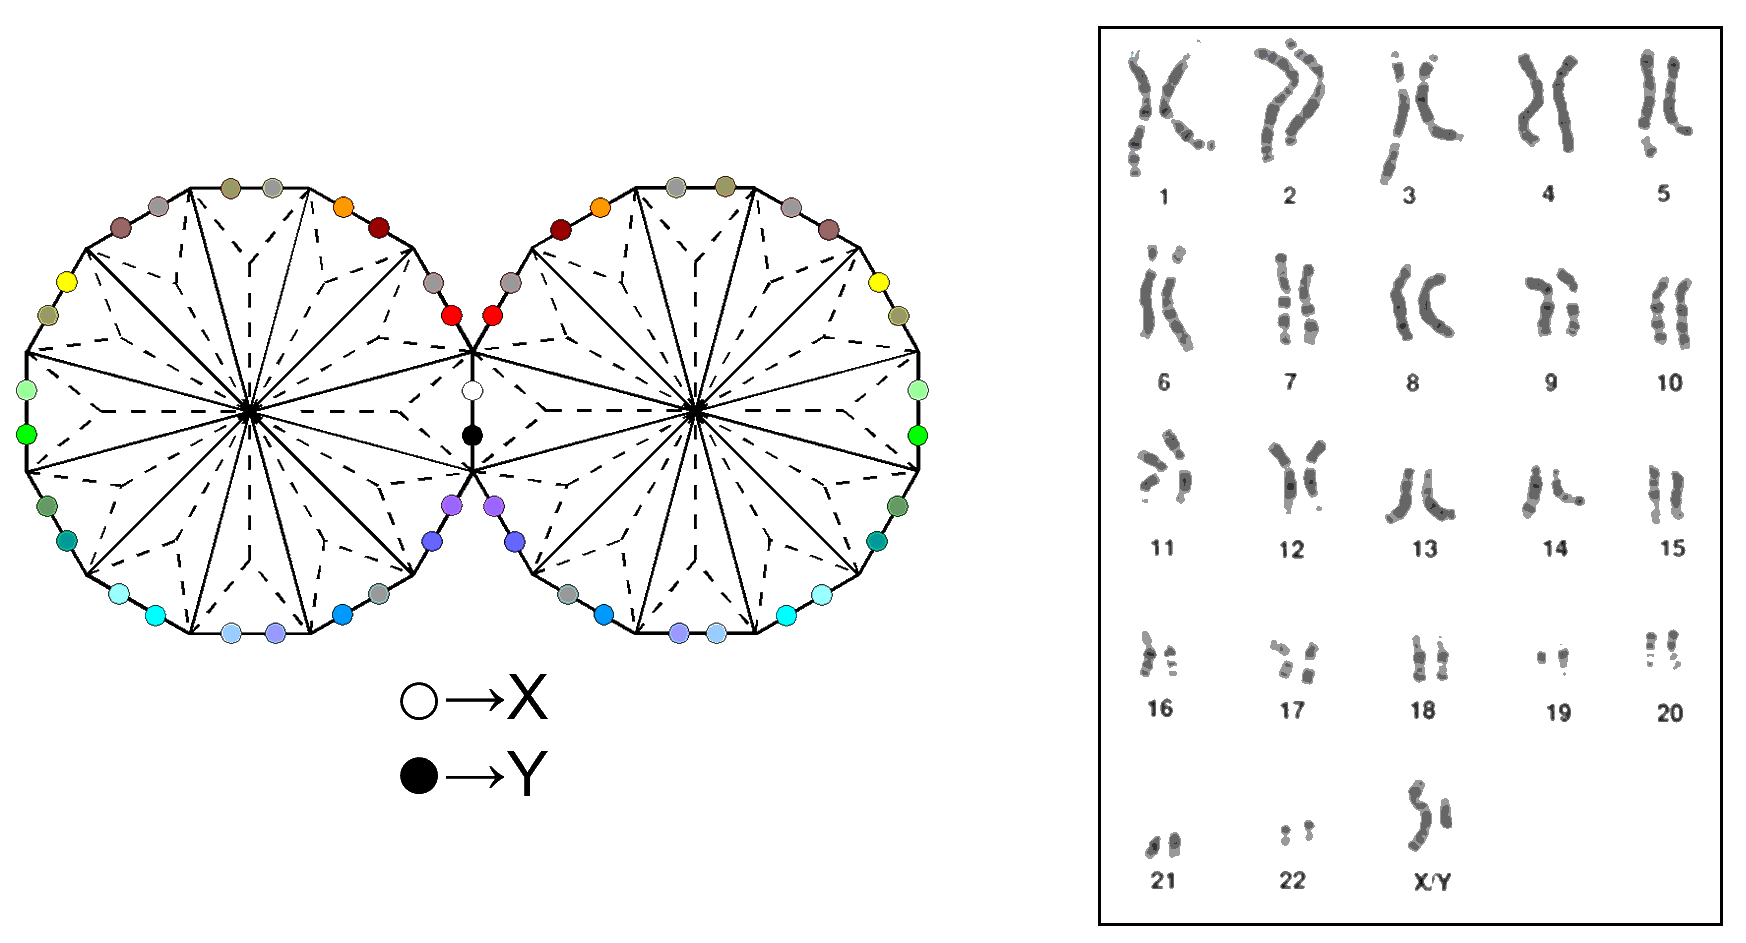 46 hexagonal yods symbolise 46 chromosomes